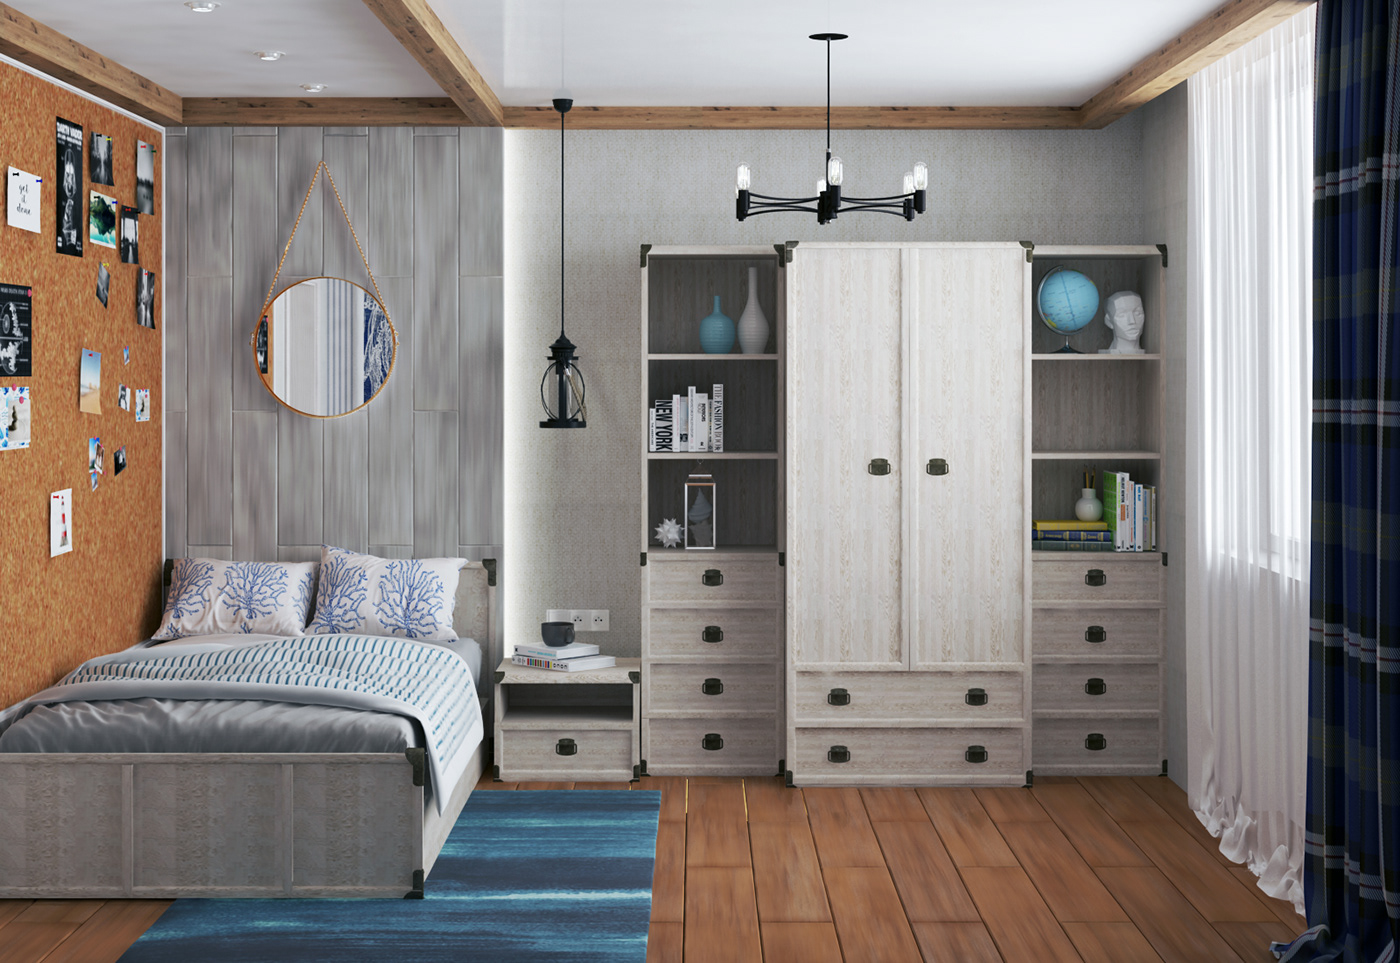 interior design  teenage bedroom Render дизайн интерьера дизайн комнаты подростка комната подростка Морской стиль средиземноморский стиль